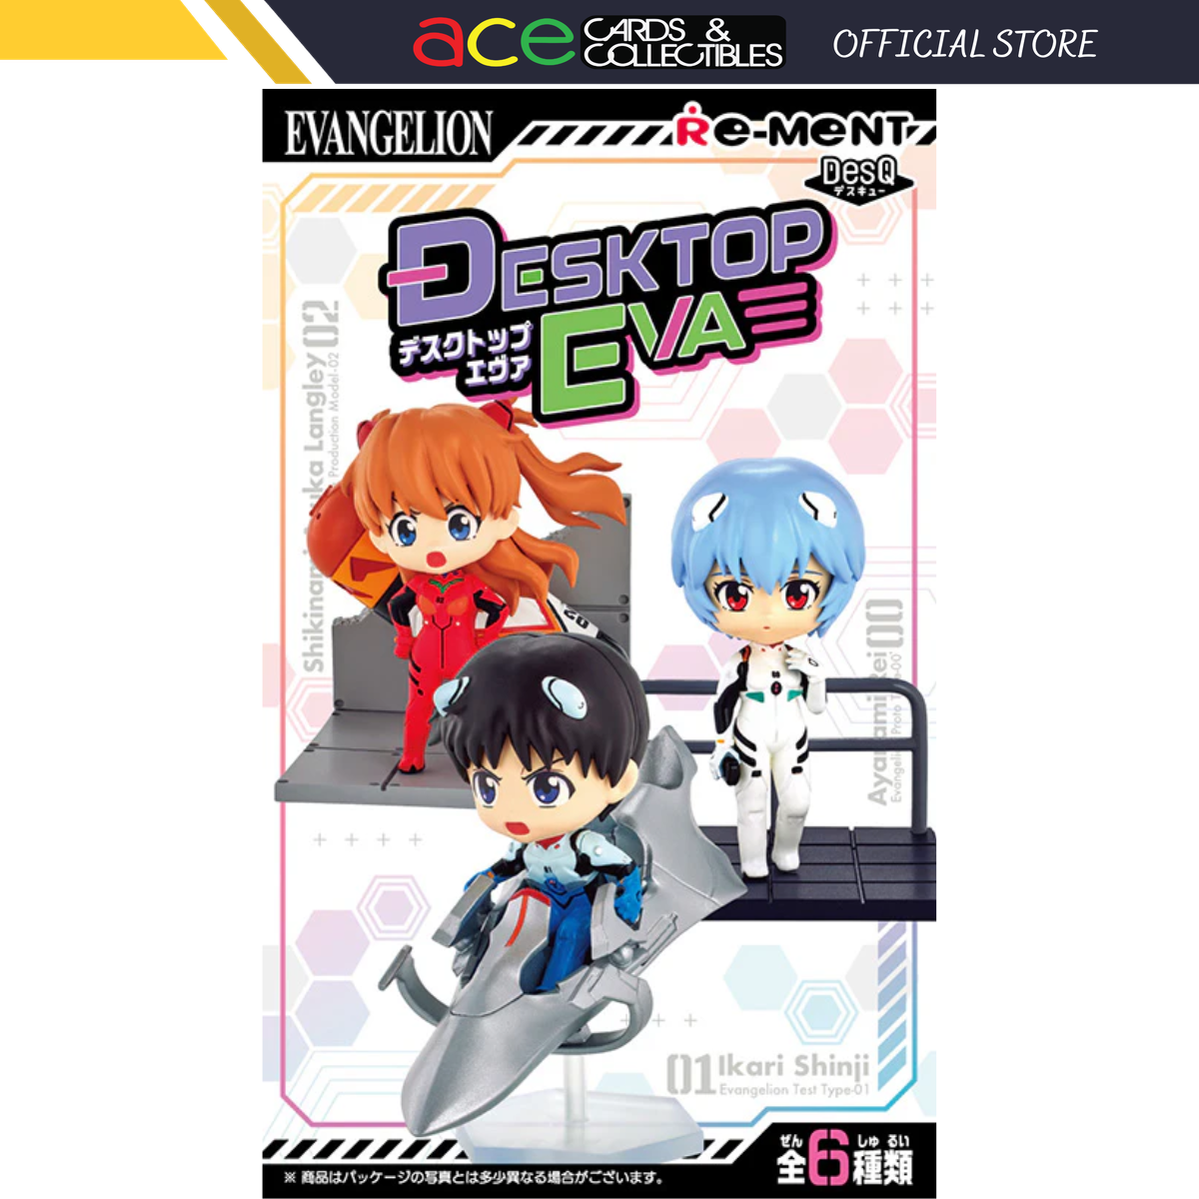 Re-Ment Evangelion Desktop Eva Series-Single Box-Re-Ment-Ace Cards &amp; Collectibles